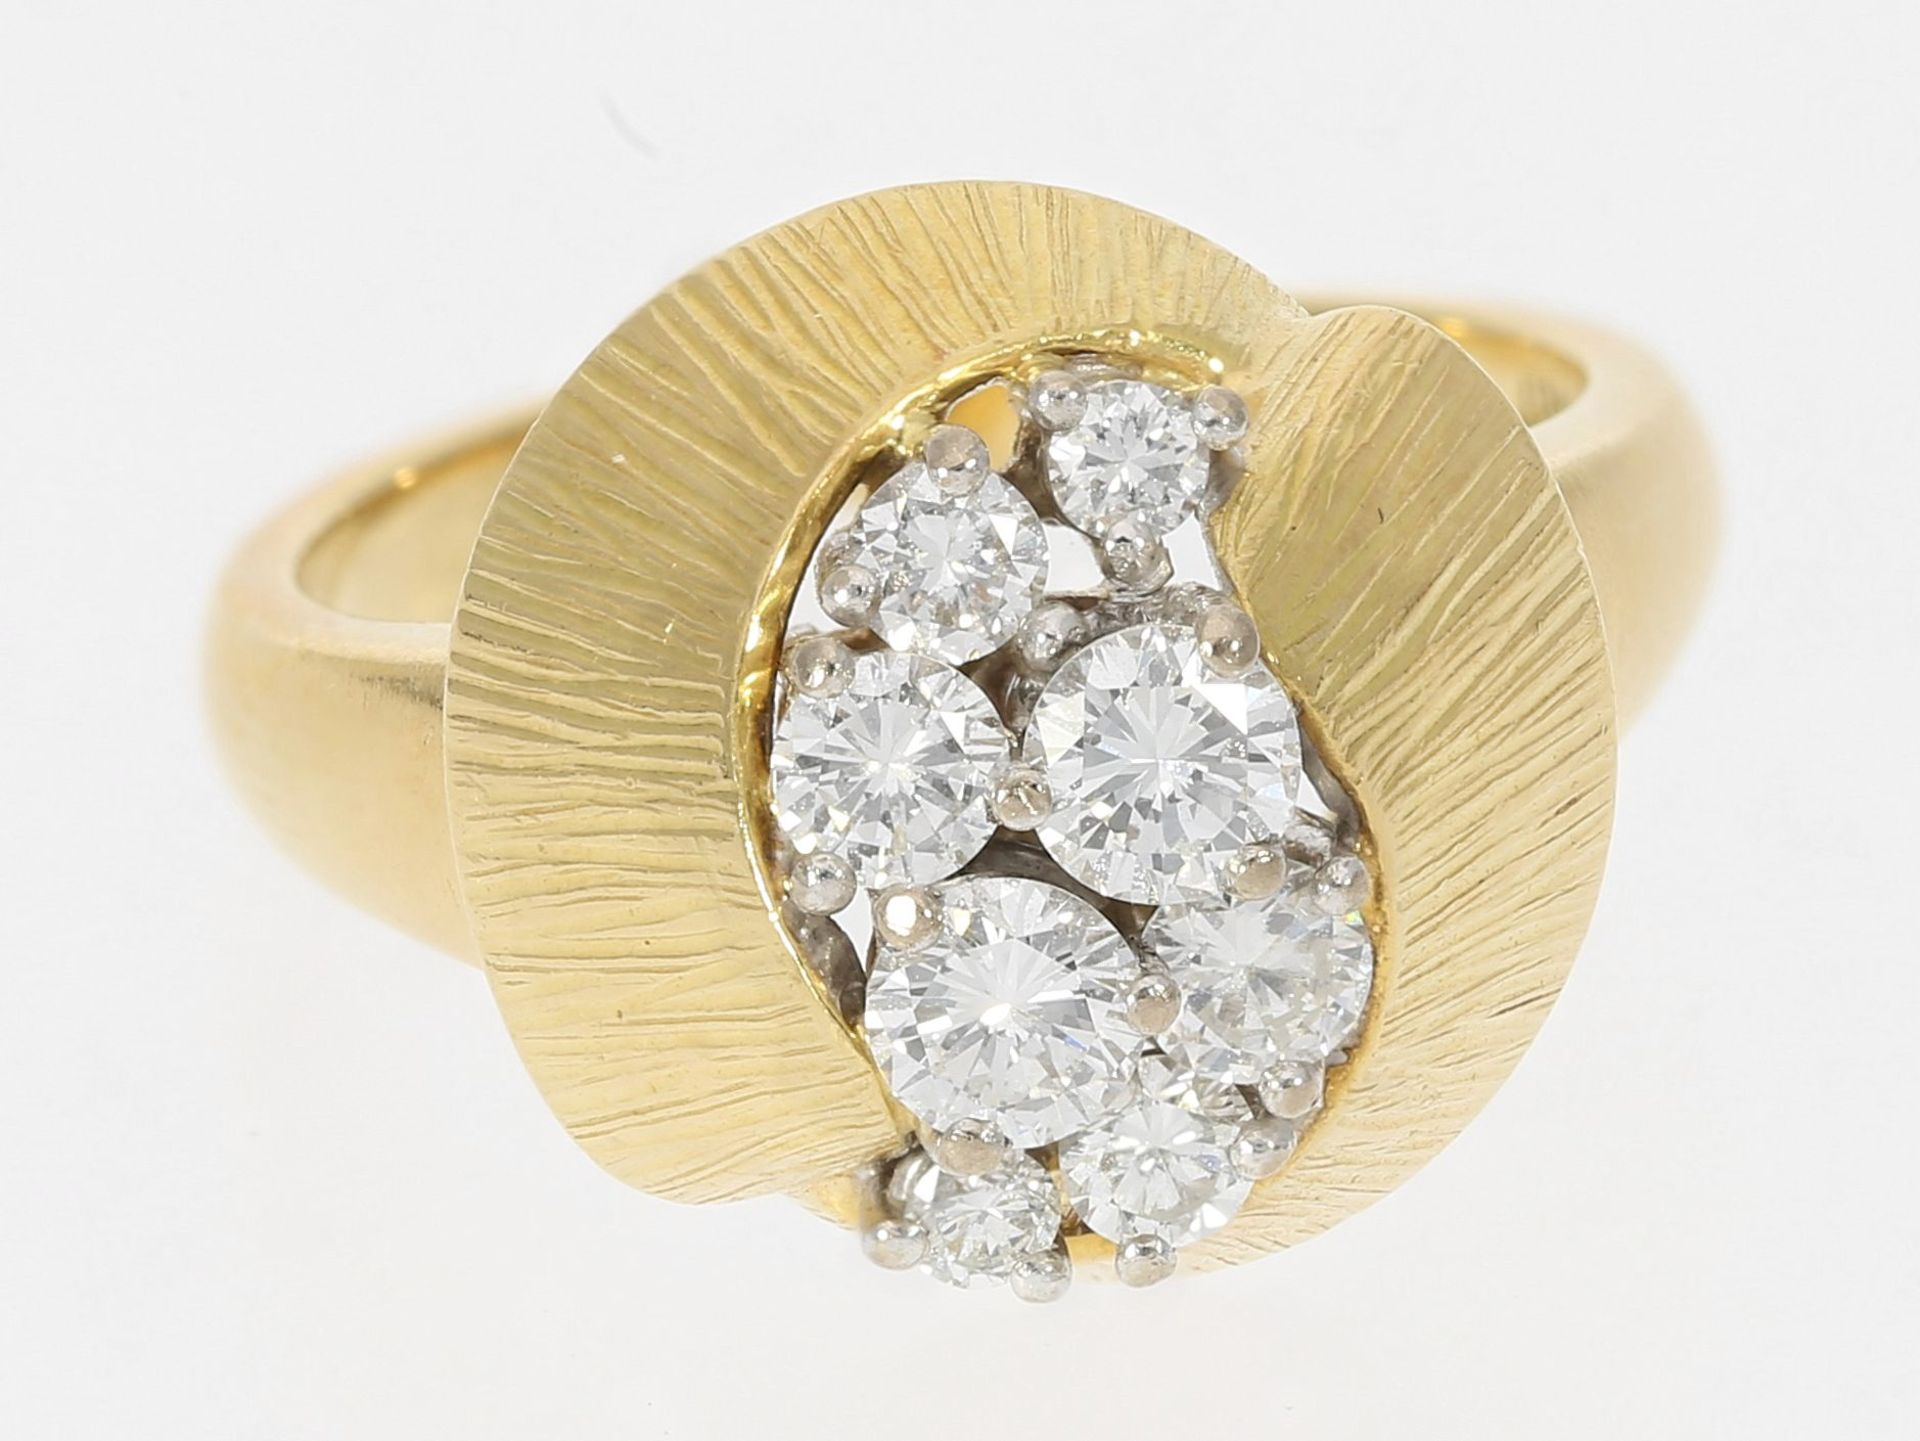 Ring: sehr dekorativer vintage Goldschmiedering mit Brillanten, insges. ca. 0,65ct, 18K Gold